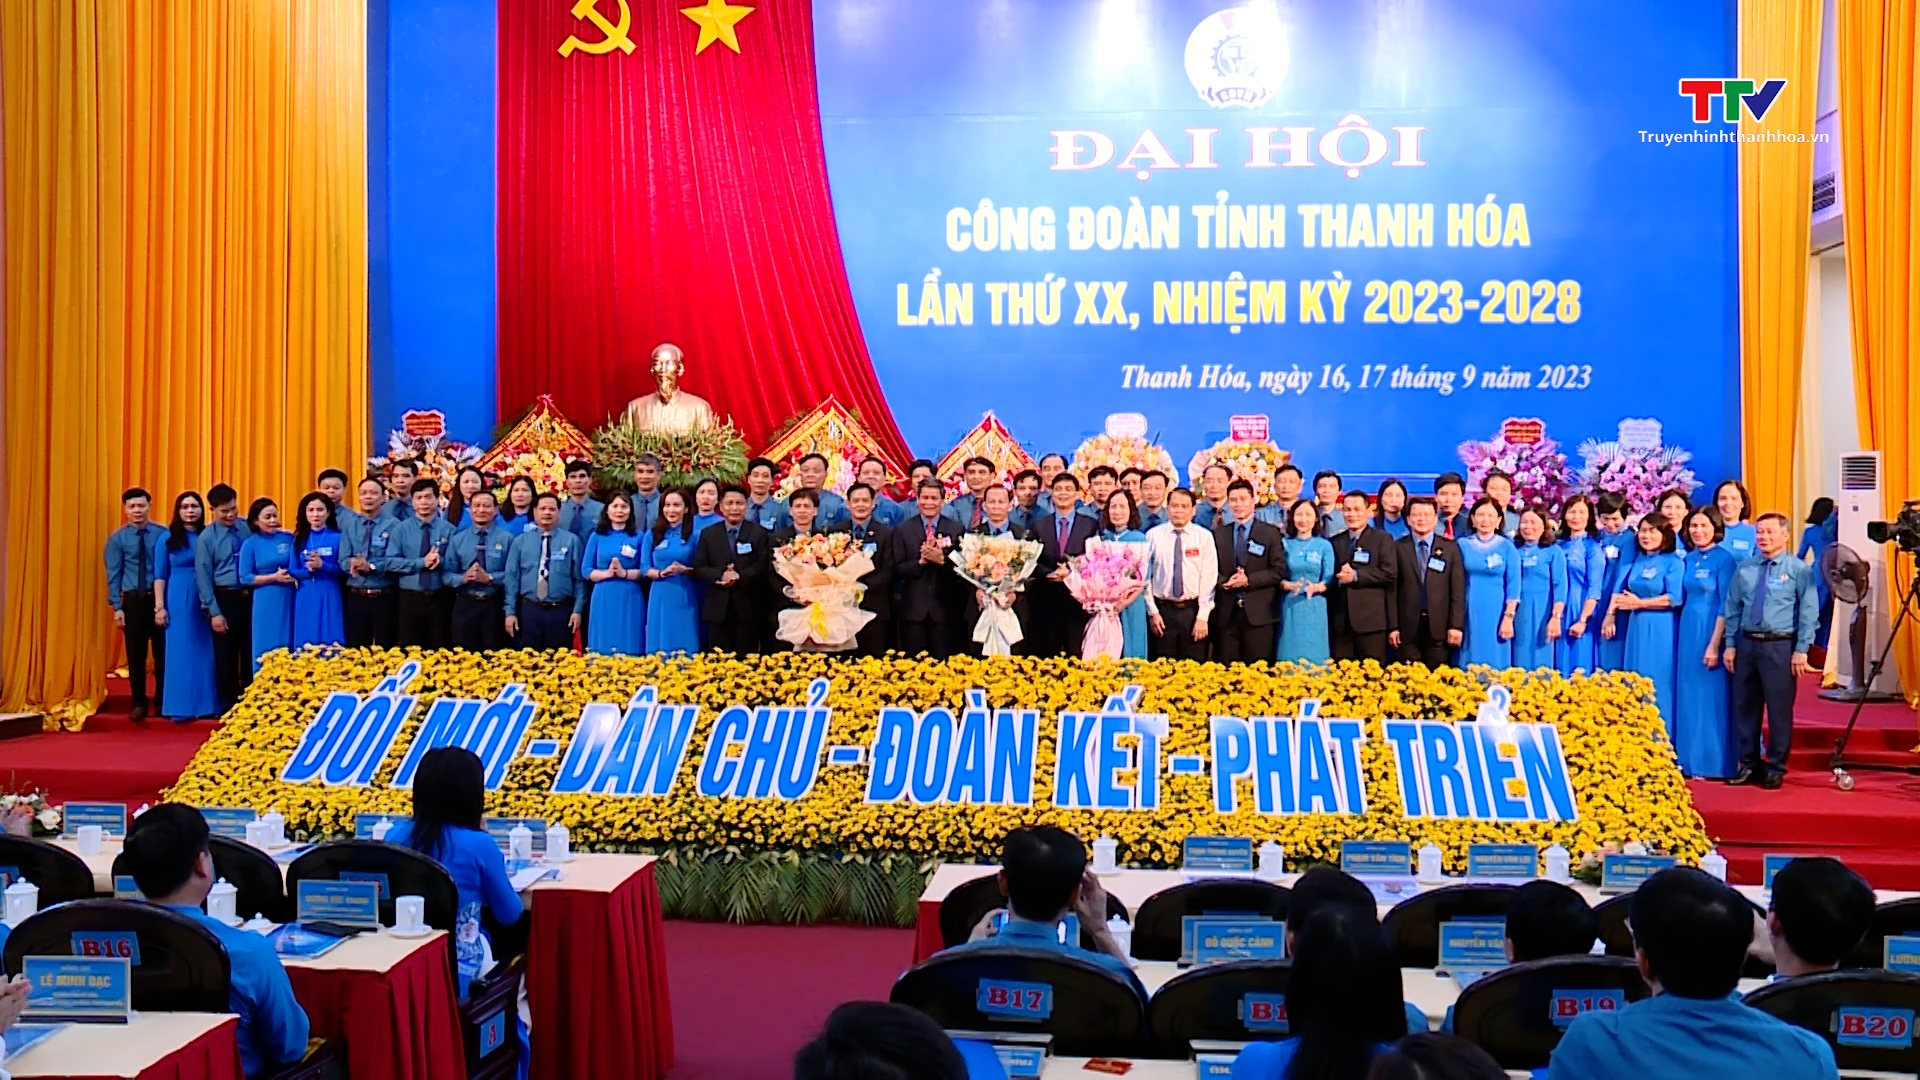 Đại hội Công đoàn tỉnh Thanh Hóa lần thứ XX, nhiệm kỳ 2023 - 2028 - Ảnh 12.